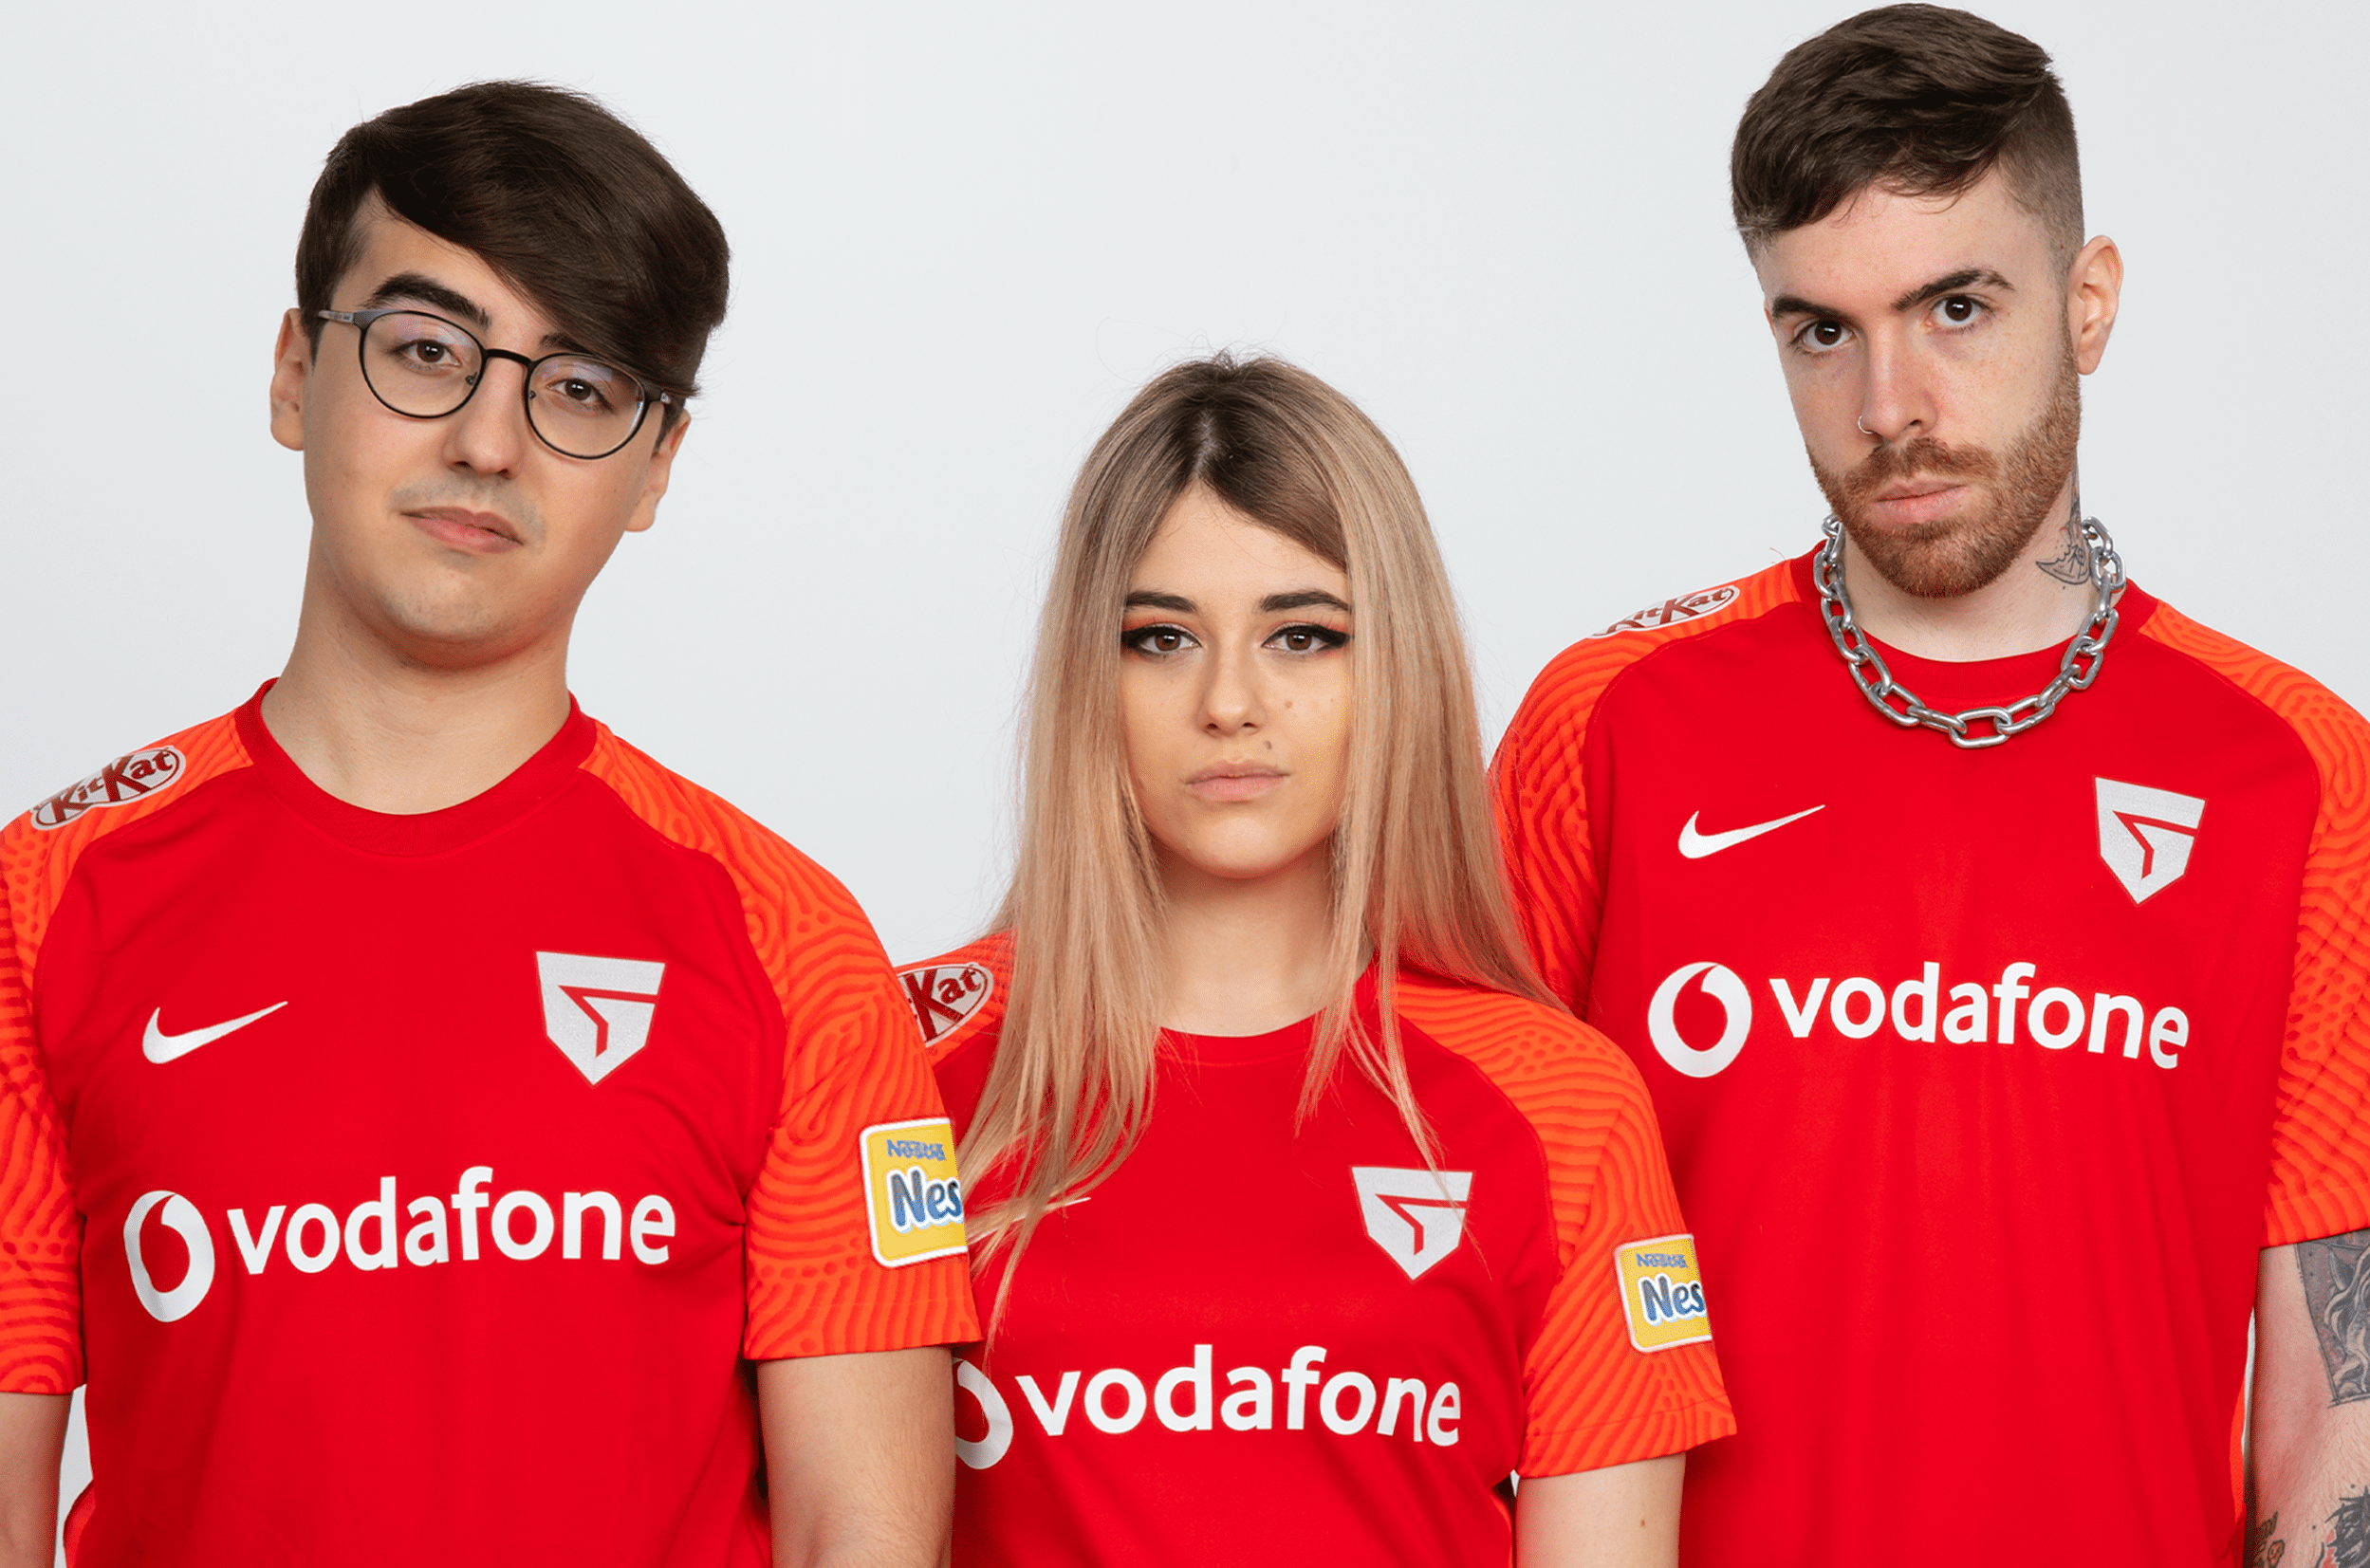 Vodafone Giants rebranding